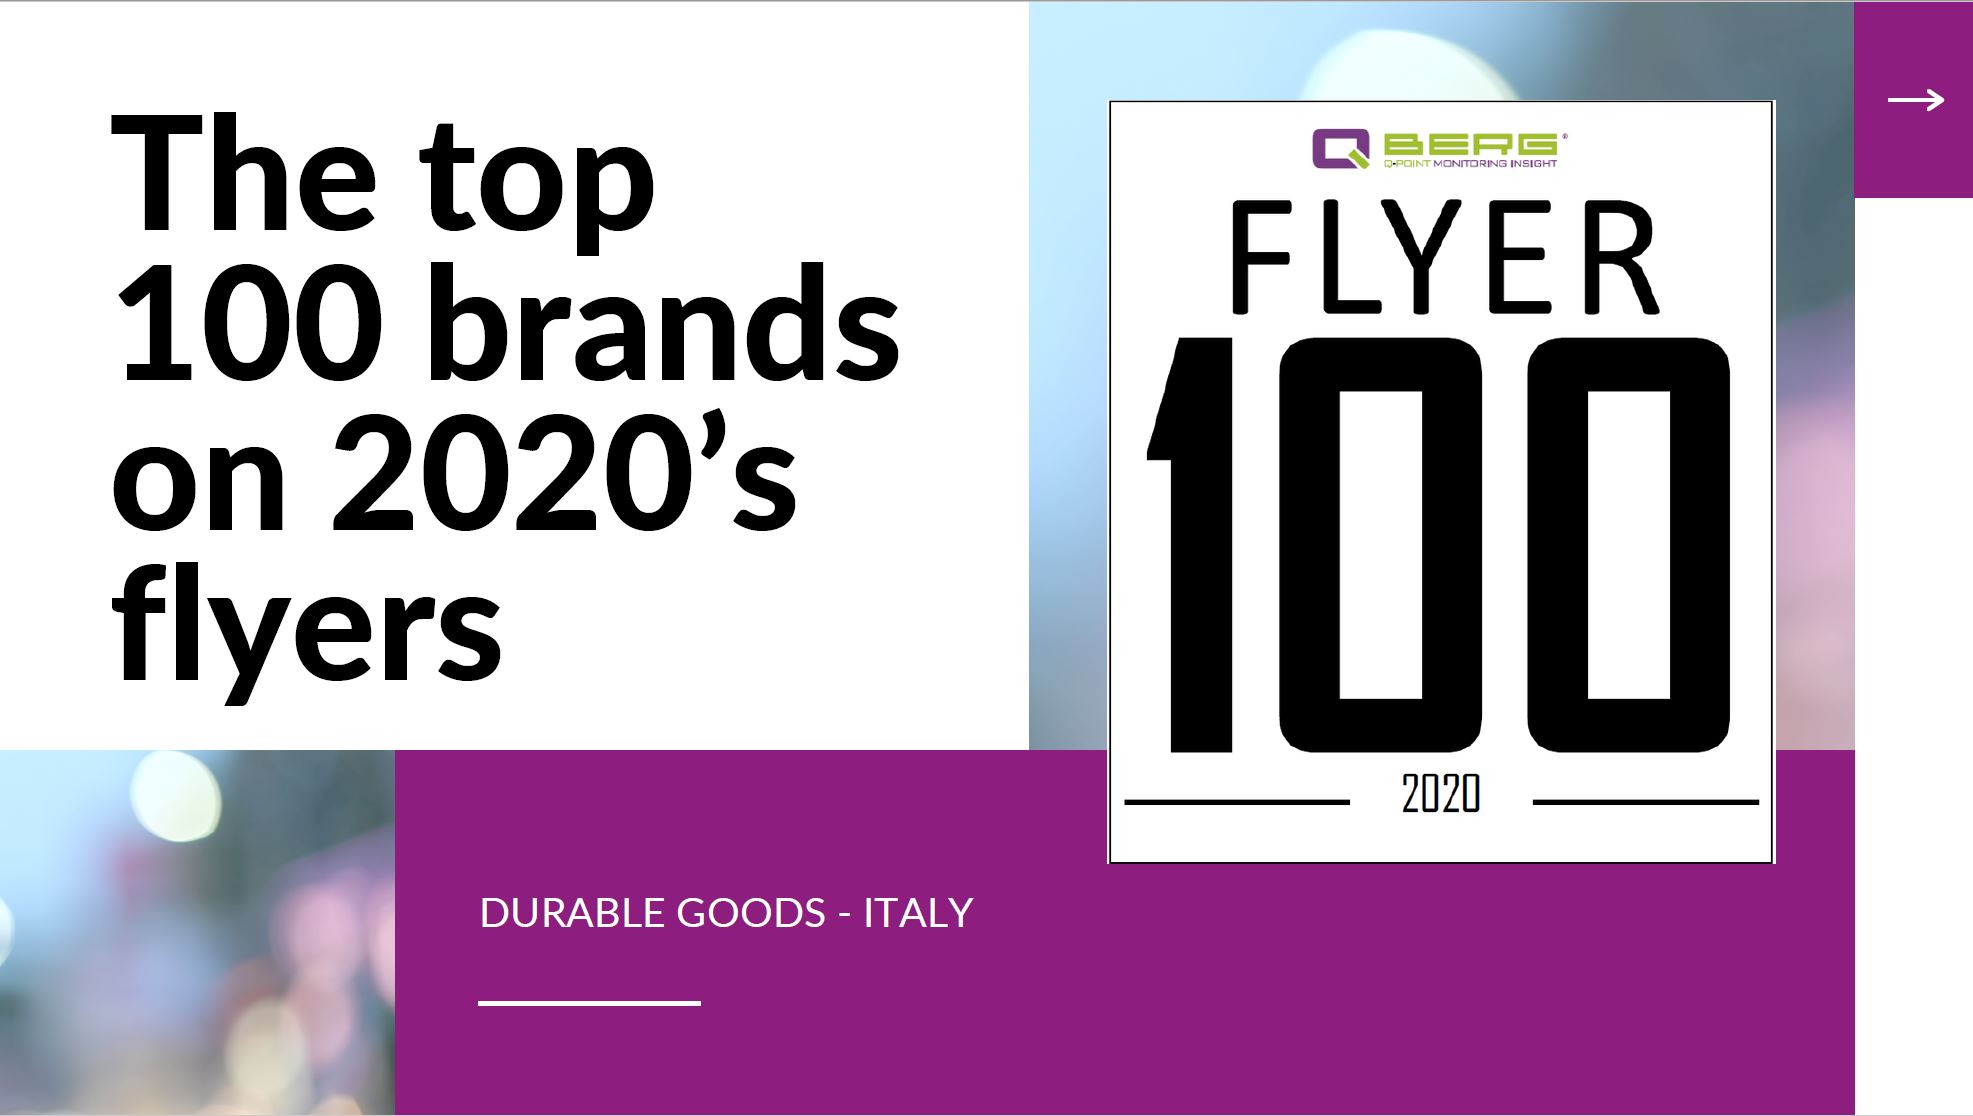 Top 100 brands on 2020’s flyer